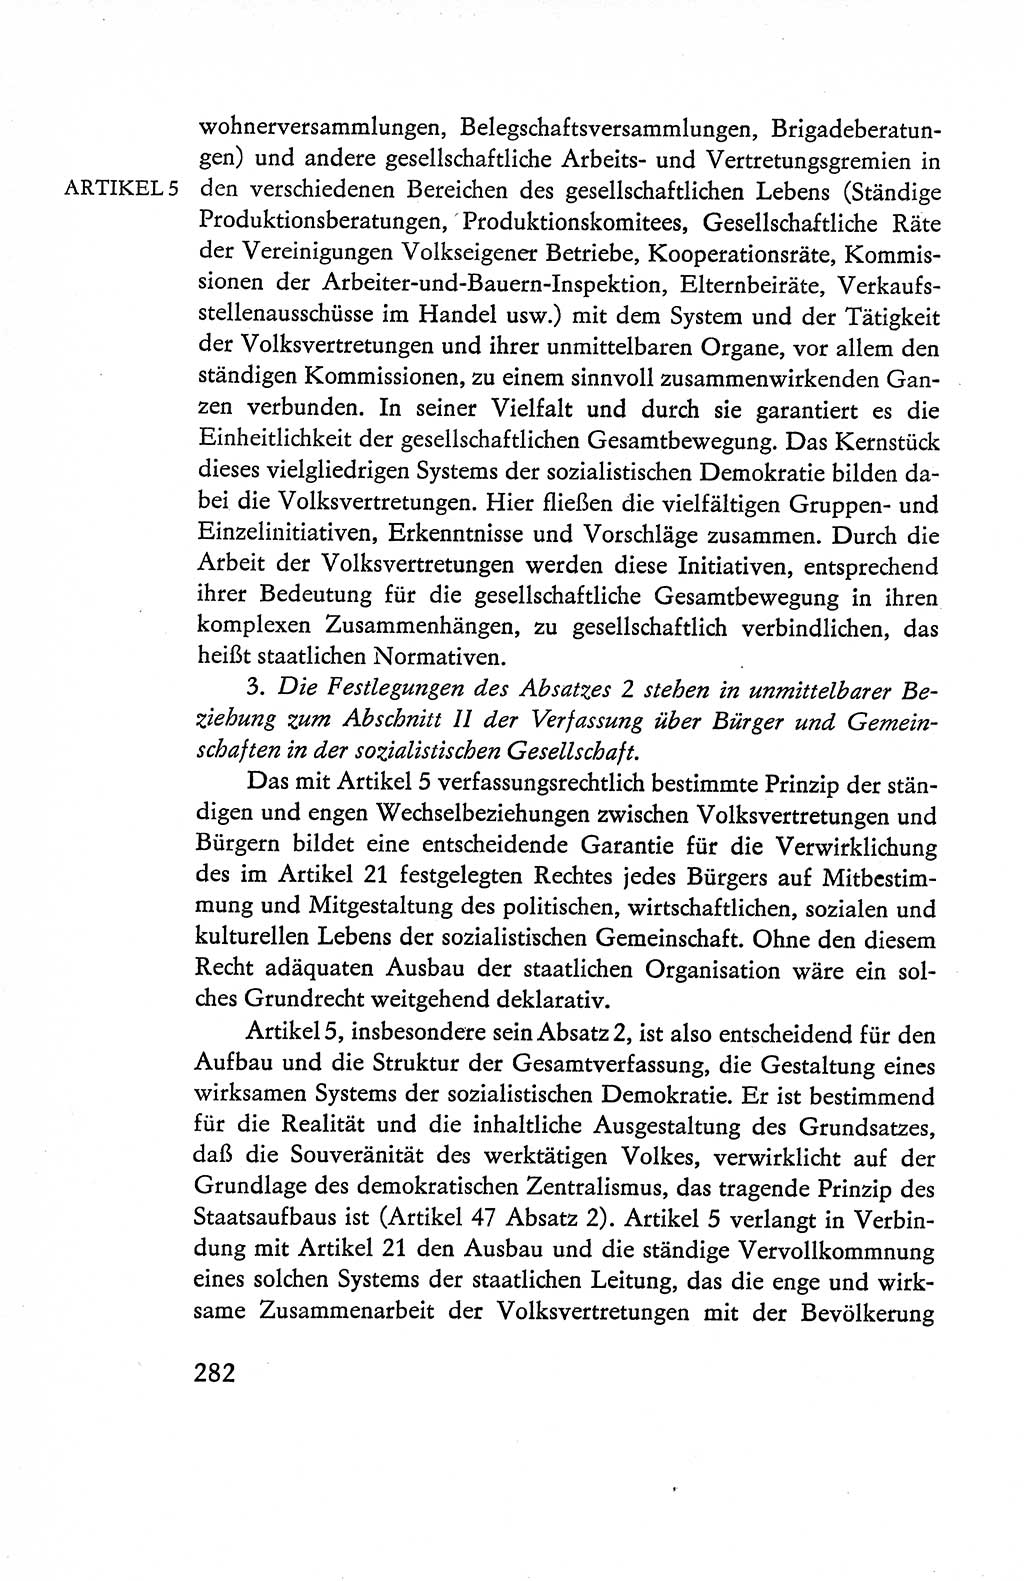 Verfassung der Deutschen Demokratischen Republik (DDR), Dokumente, Kommentar 1969, Band 1, Seite 282 (Verf. DDR Dok. Komm. 1969, Bd. 1, S. 282)